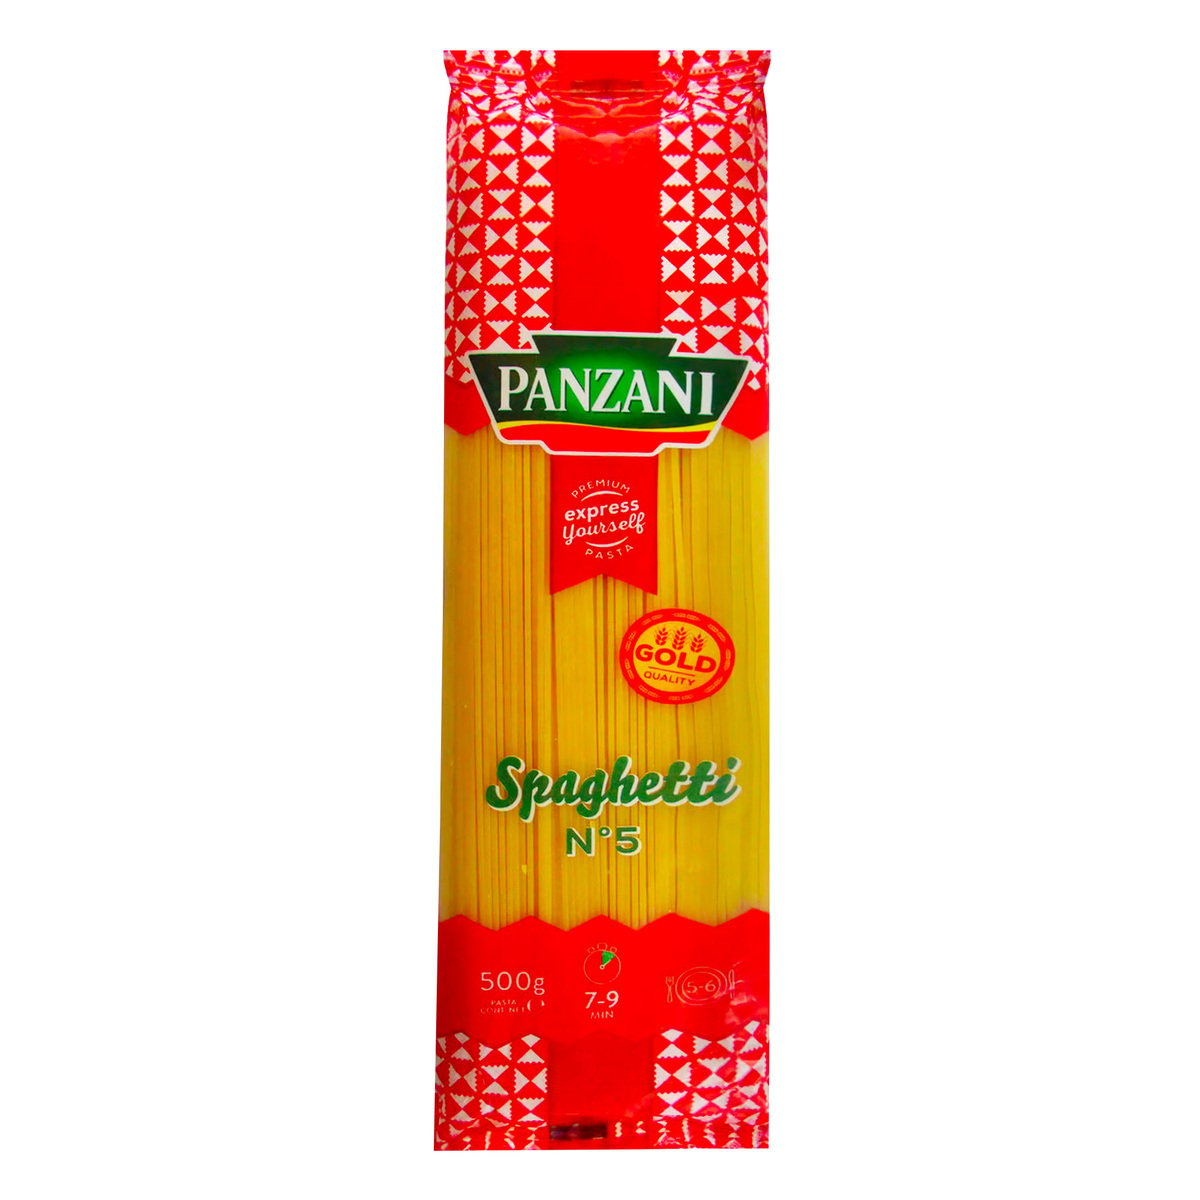 Panzani Spaghetti No.5 Value Pack 4 x 500g